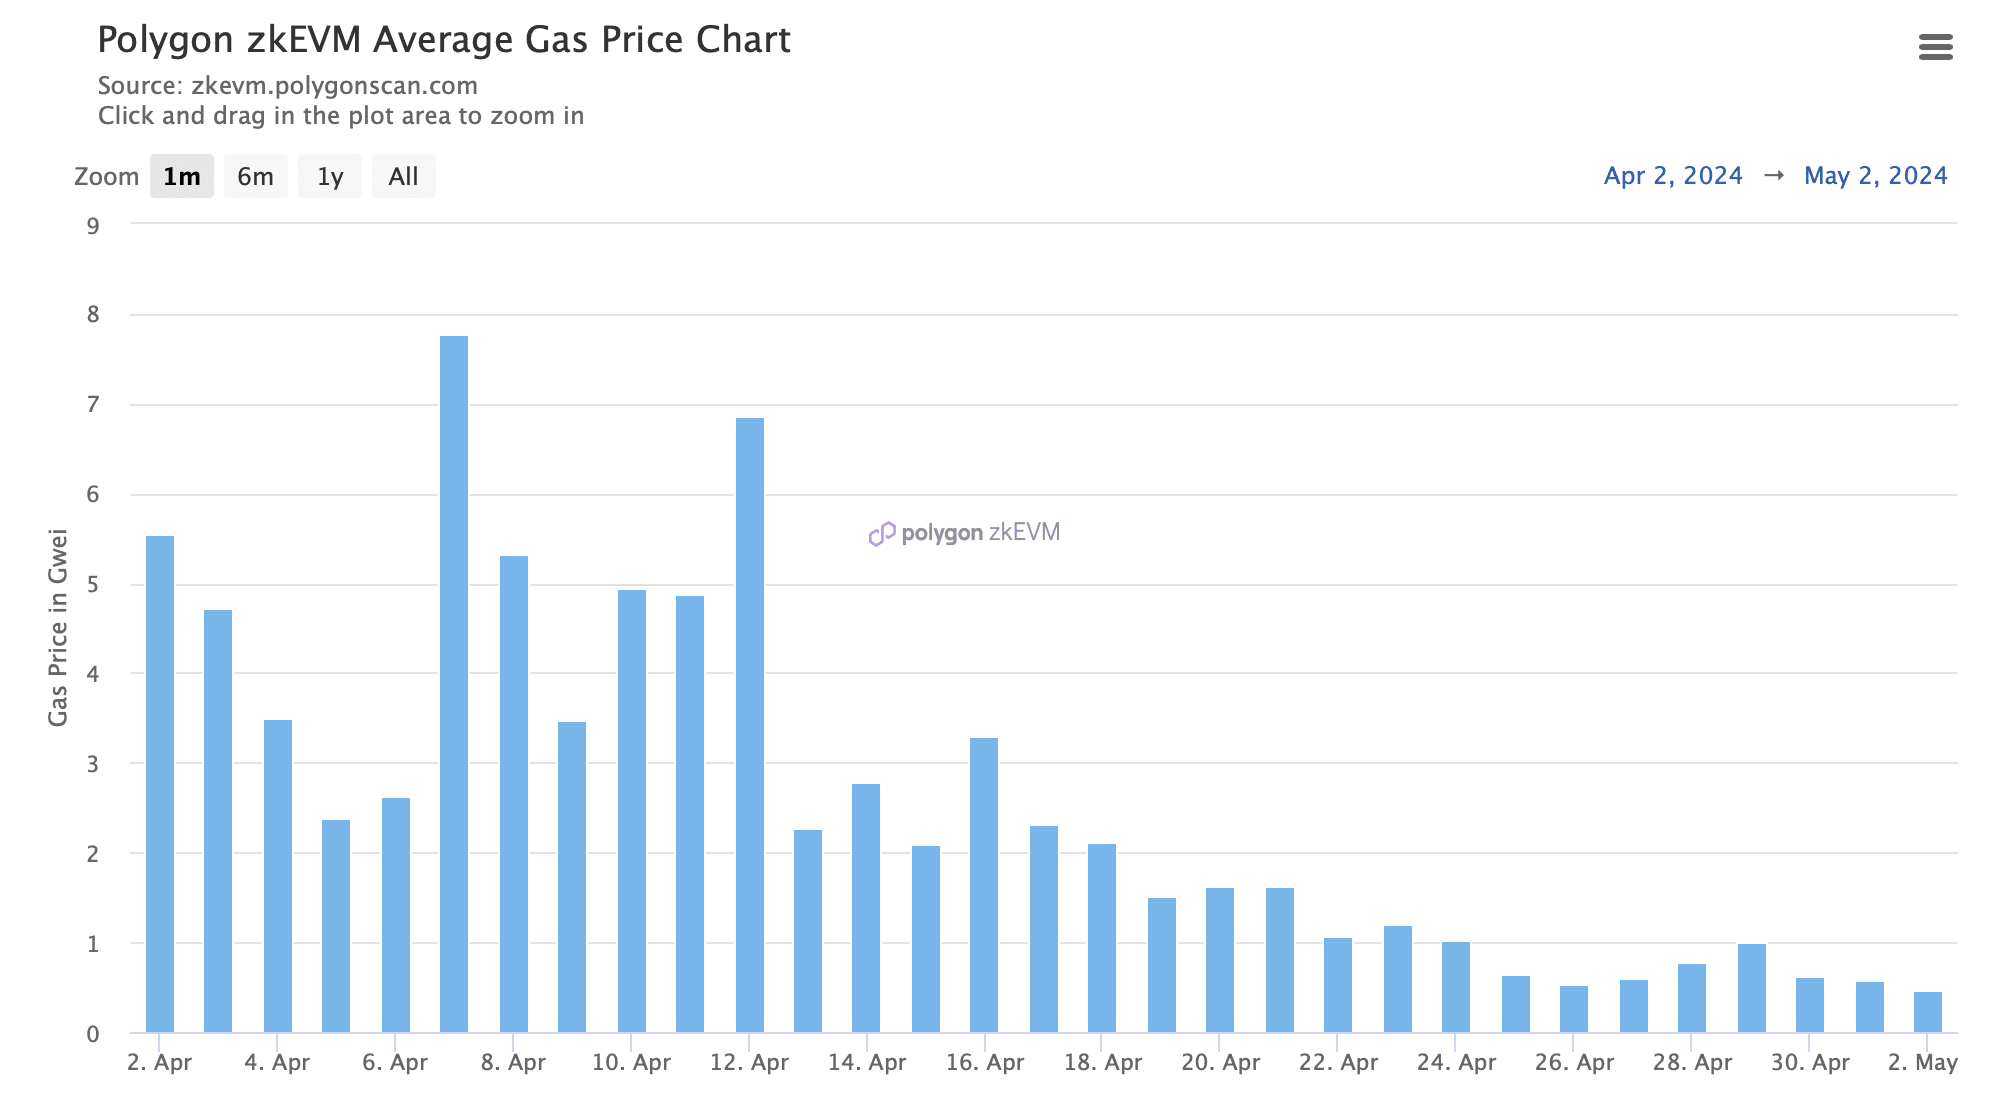 El precio del gas de zkEVM bajó